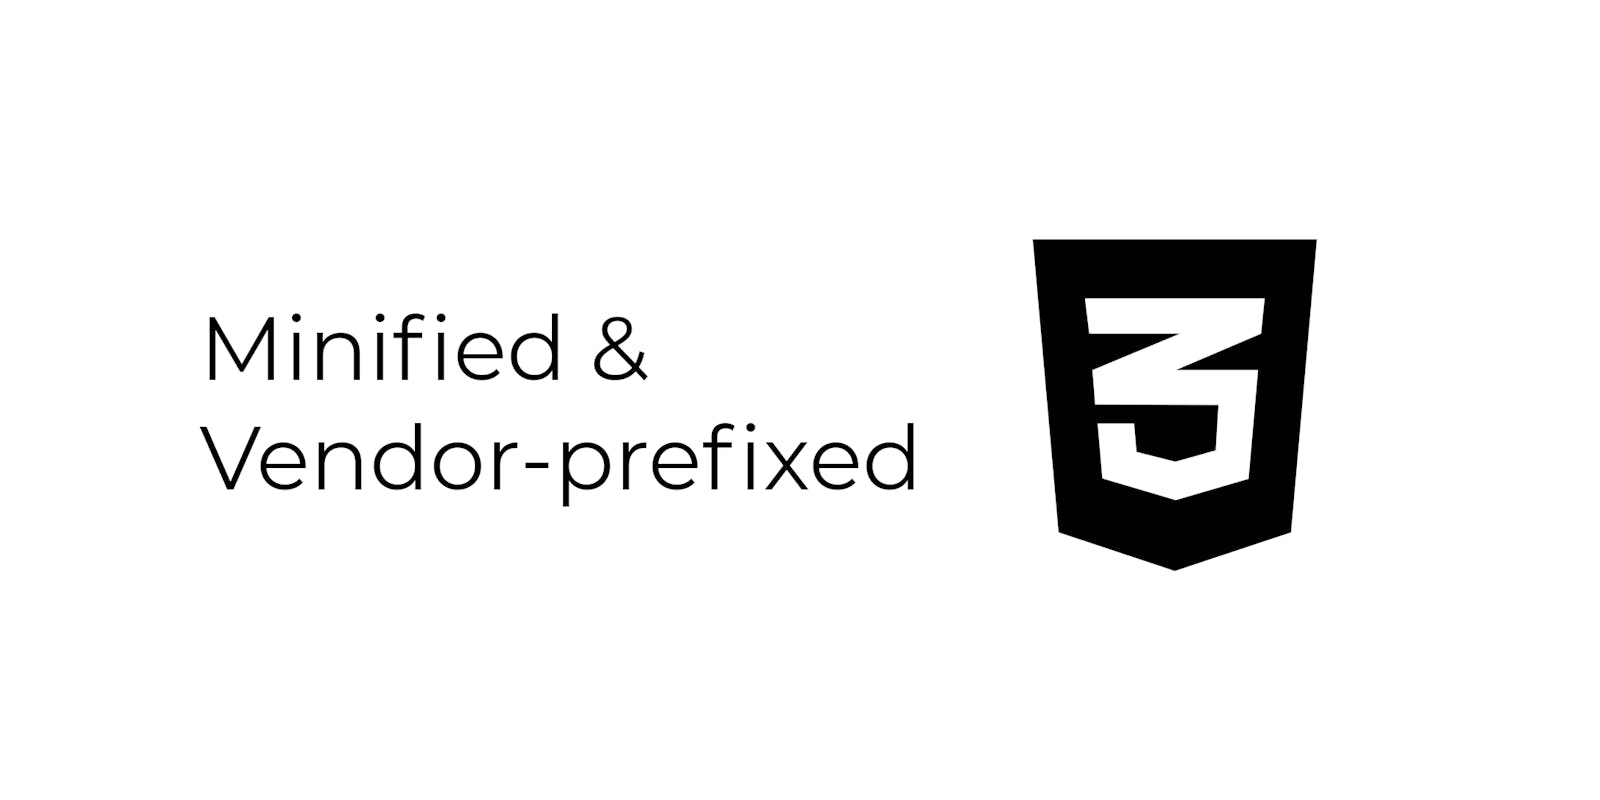 How to vendor prefix and minify CSS?